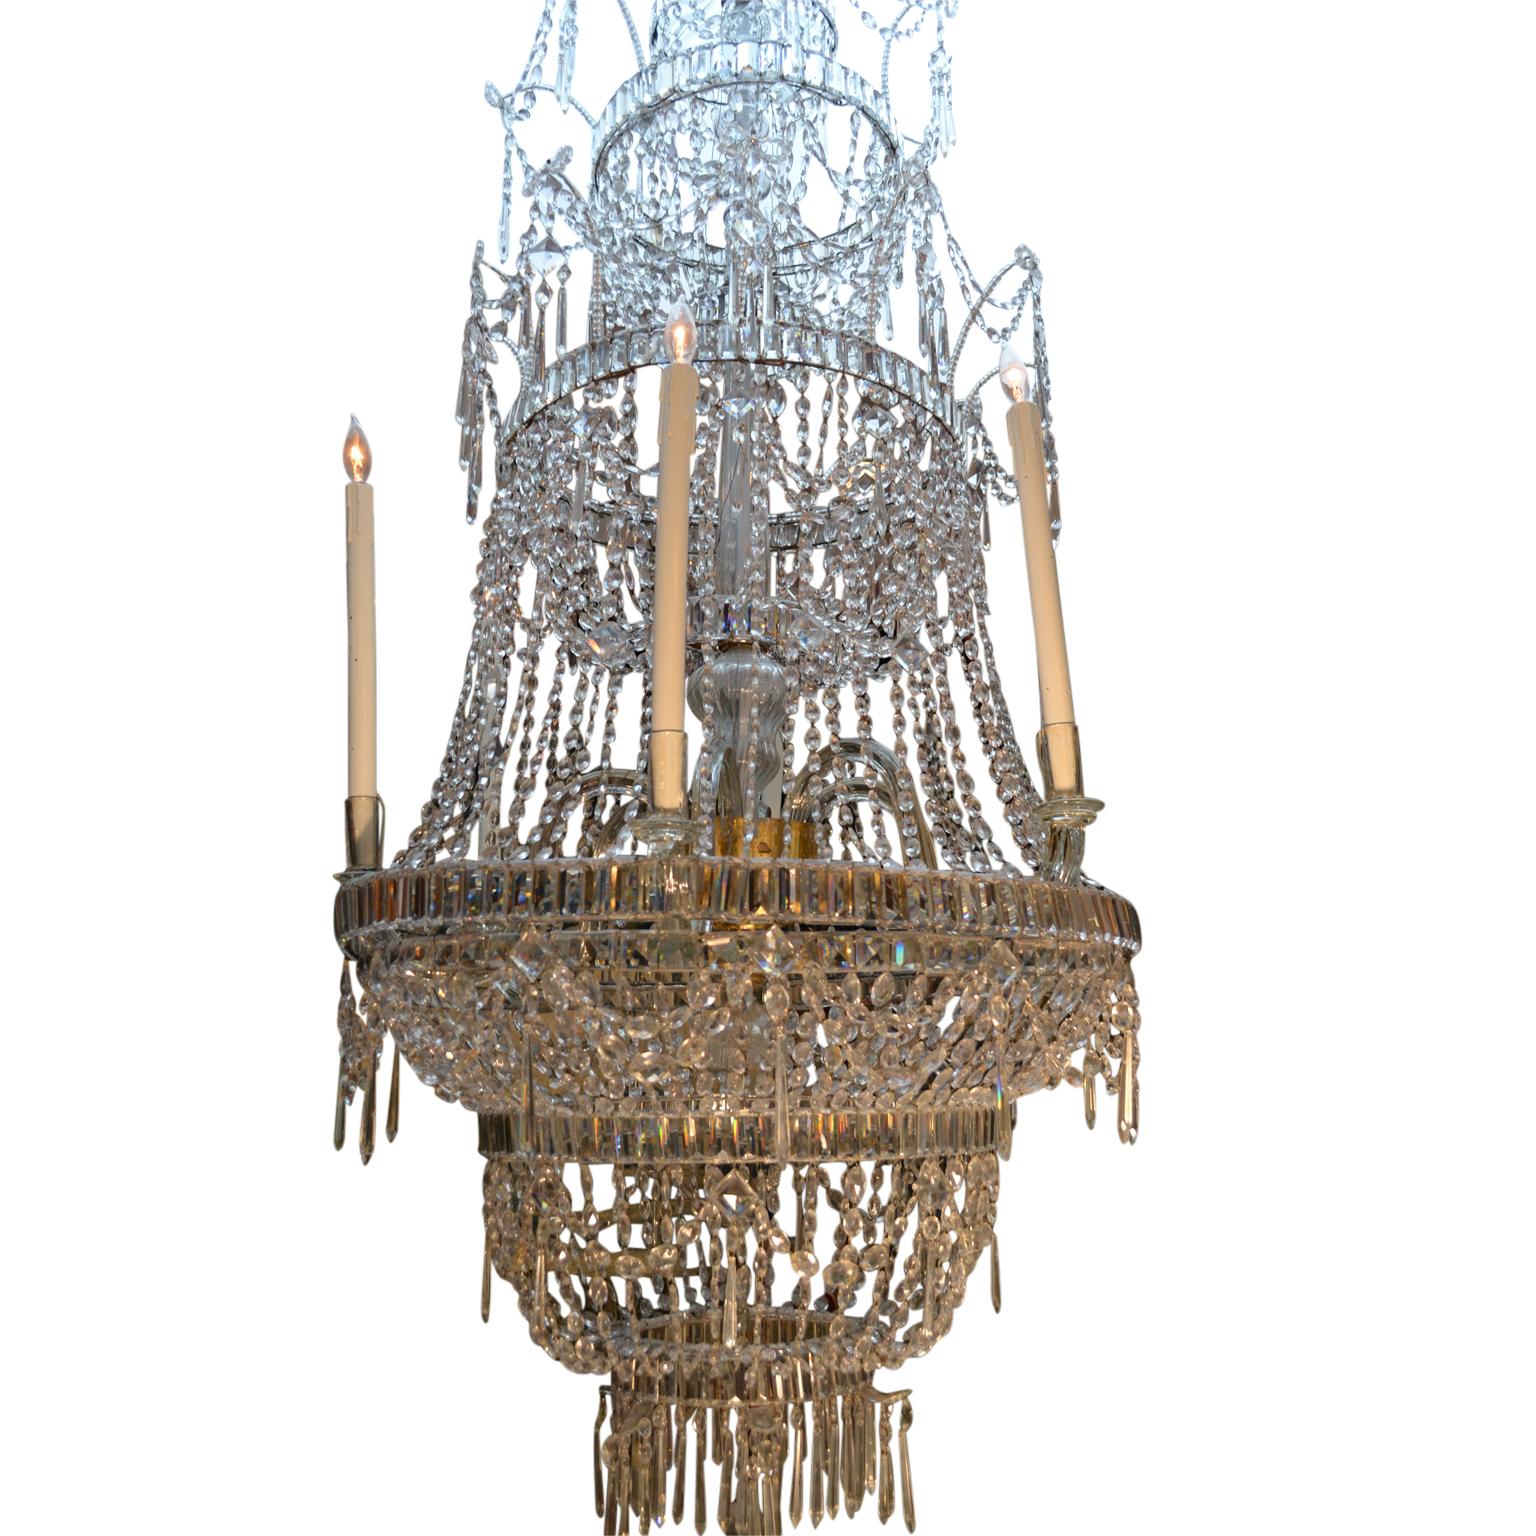 Un lustre en cristal néoclassique du 18ème siècle à plusieurs niveaux, de taille palatiale, provenant du célèbre fabricant de cristal royal de La Granja en Espagne. Ce lustre est accompagné d'une histoire et d'une provenance incroyables. Il faisait